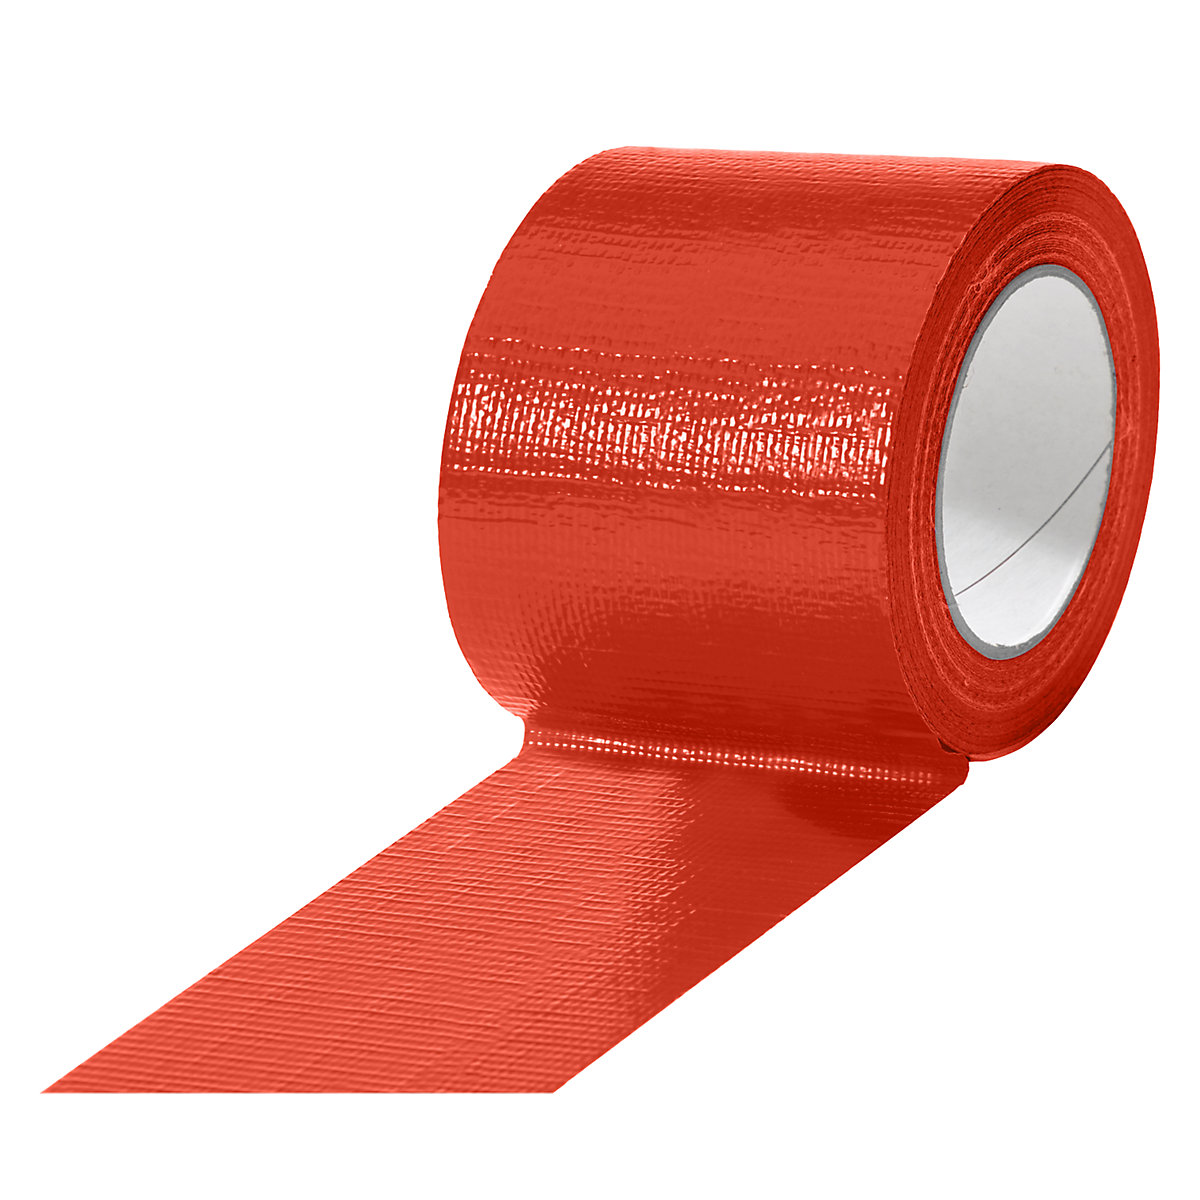 Gewebeband, in verschiedenen Farben, VE 12 Rollen, rot, Bandbreite 75 mm